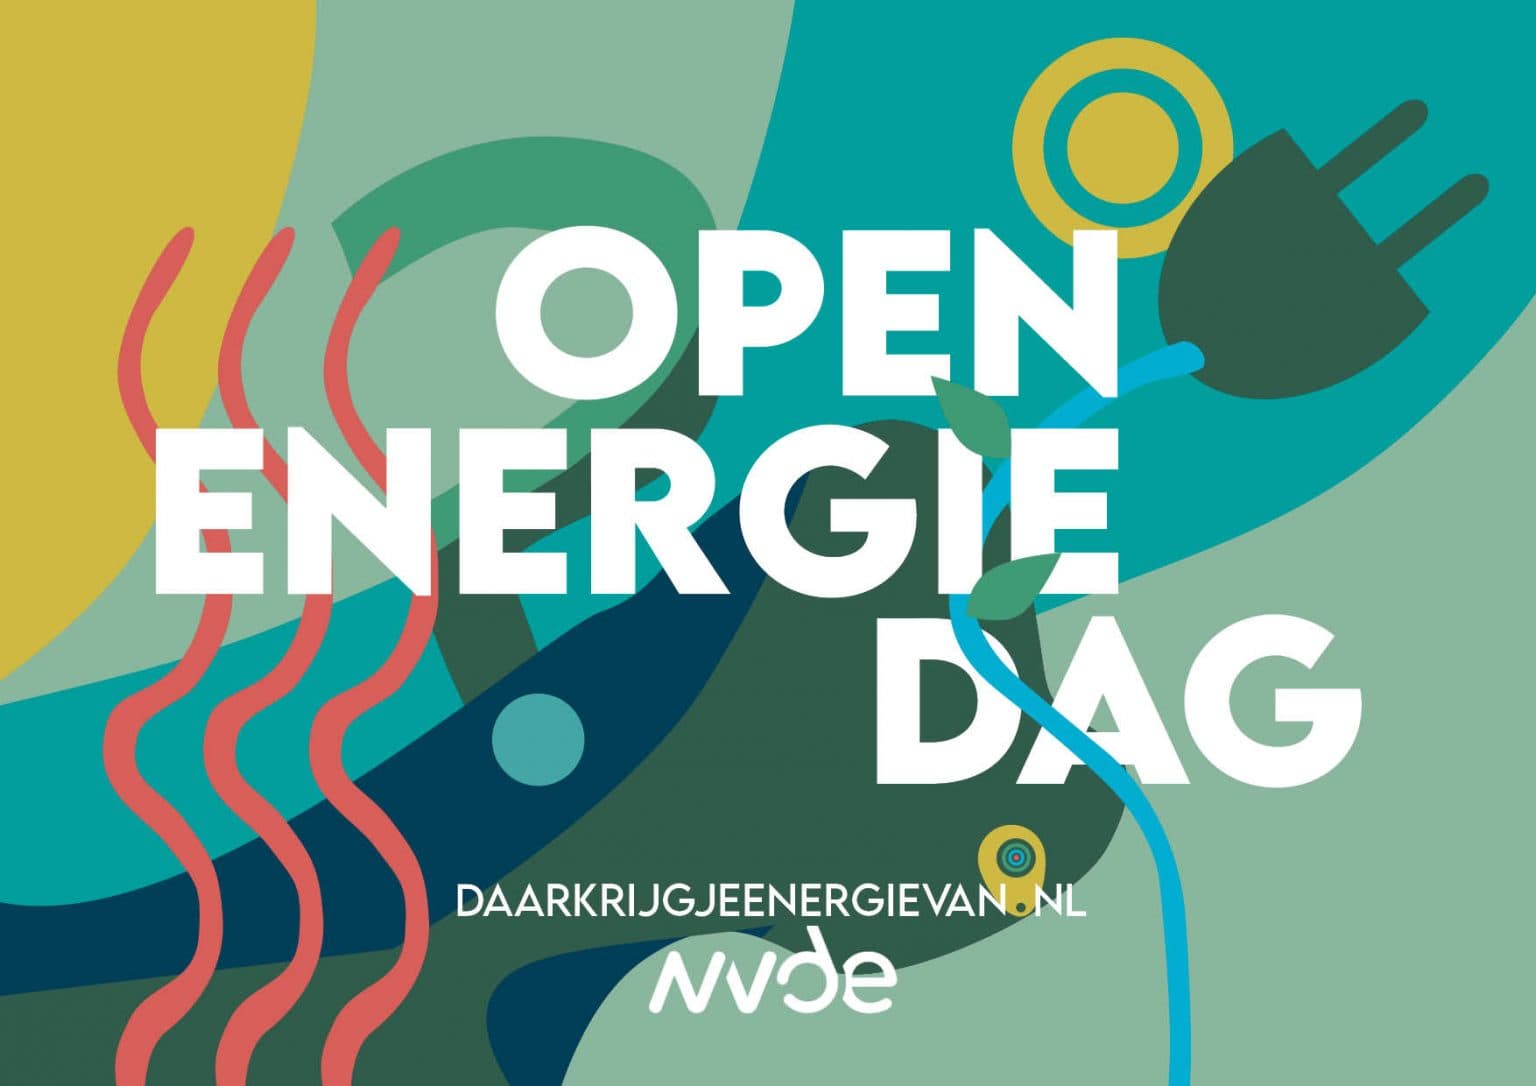 Open Energiedag